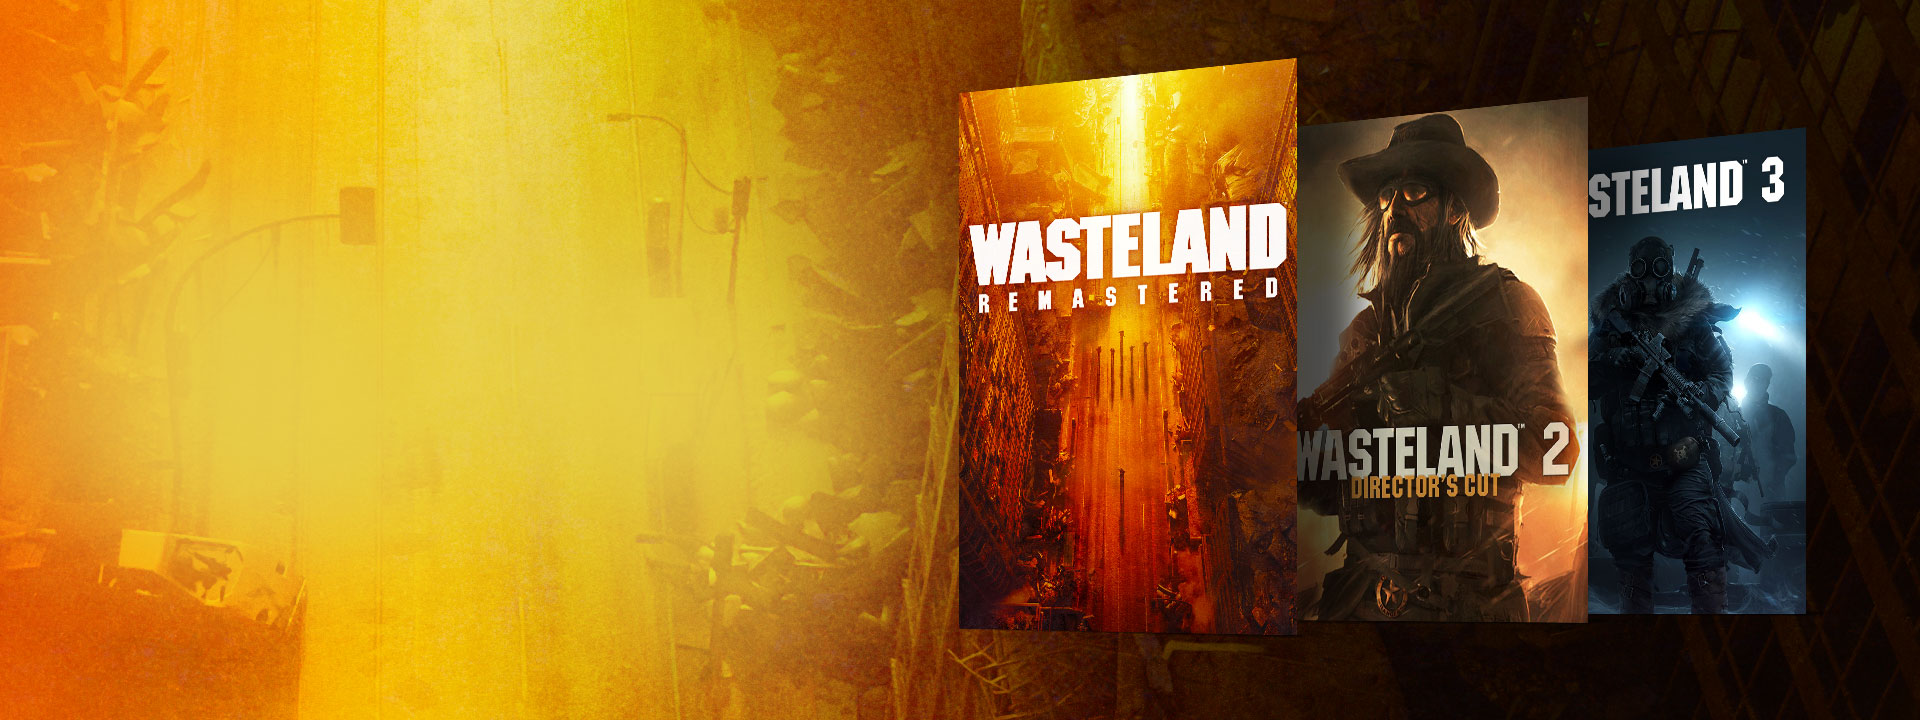 Boxshots of Wasteland Remastered, Wasteland 2 Director's Cut, og Wasteland 3. En bakgrunn av en forlatt gate med gule og oransje fargetoner